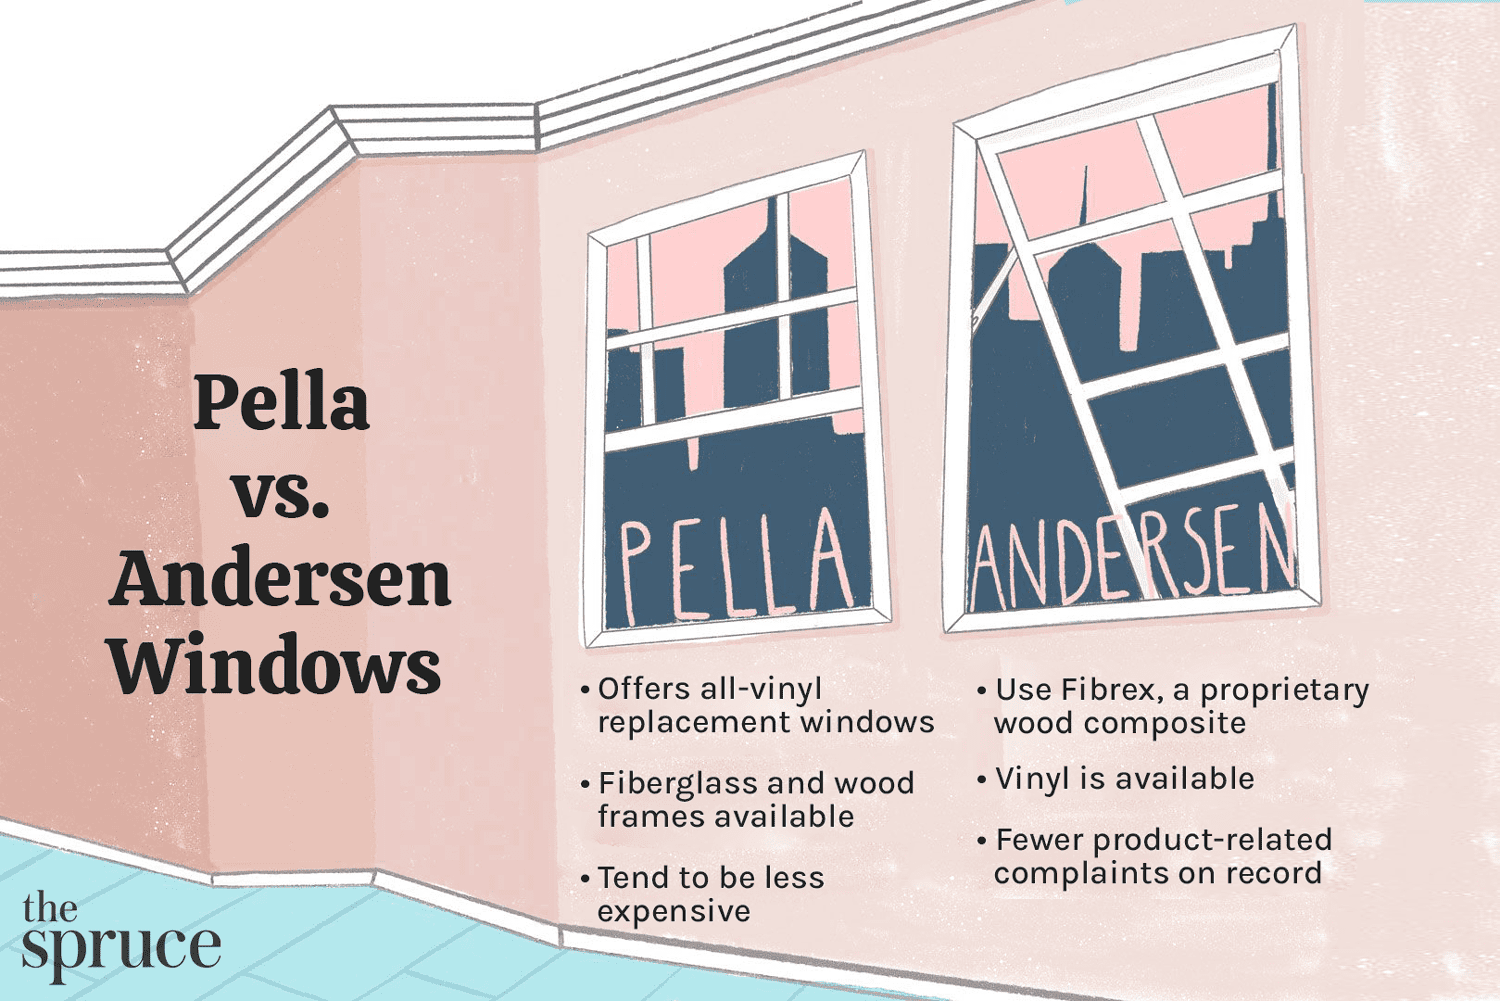 Ilustración que muestra las diferencias entre las ventanas Pella y Andersen